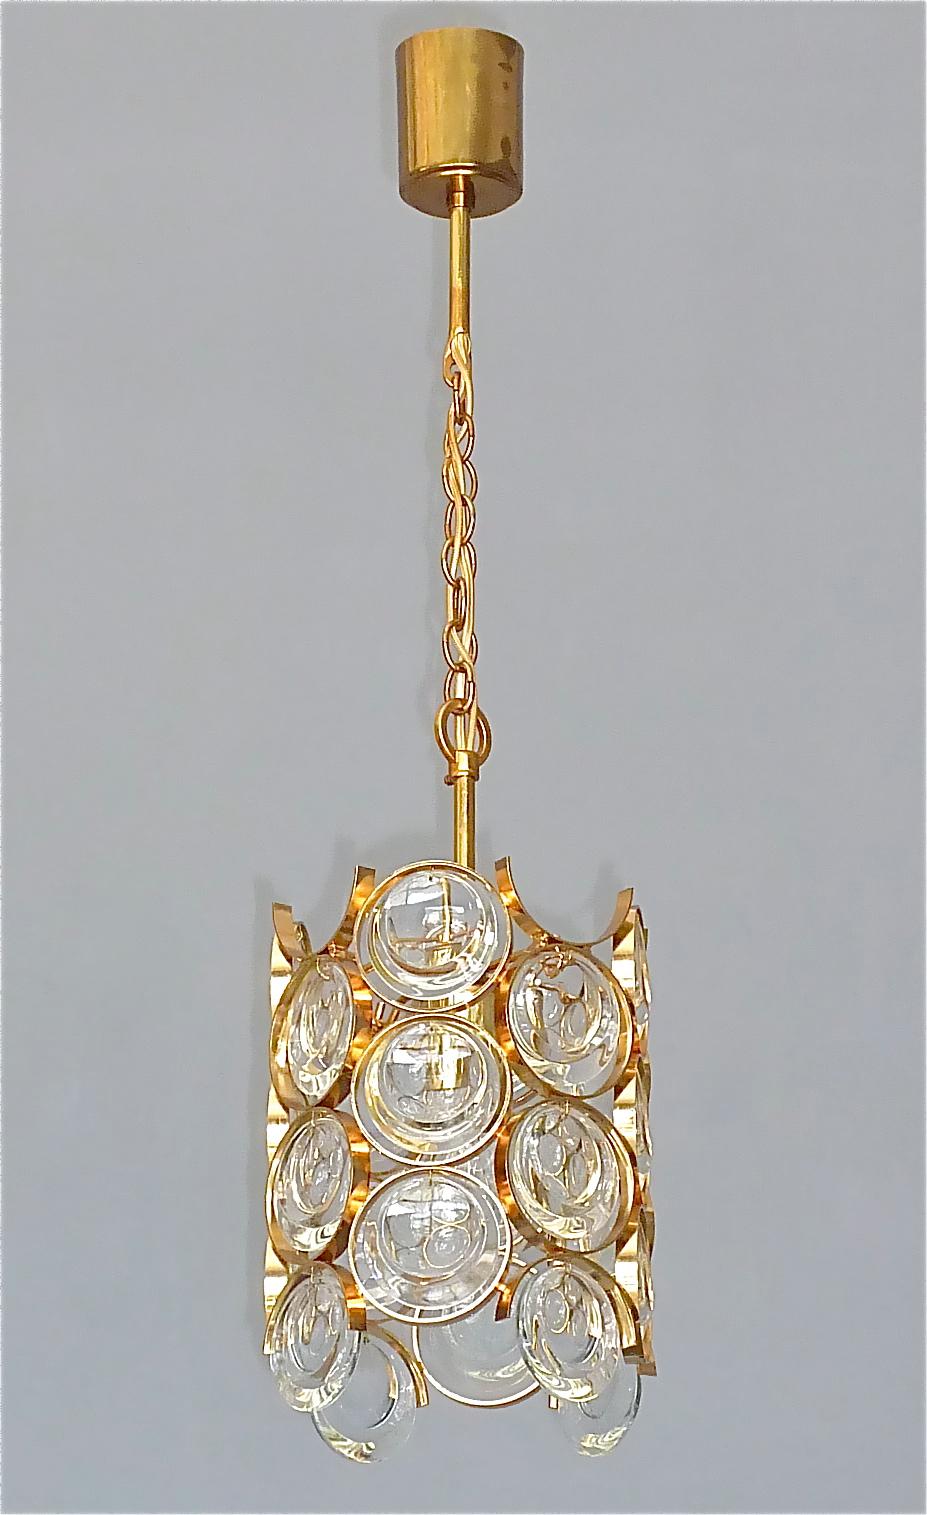 Kronleuchter aus vergoldetem Messing und Kristallglas, hergestellt von Palwa, Deutschland, ca. 1960-1970. Die an einer Kette hängende, längenverstellbare Hängeleuchte hat eine vergoldete Messingmetallkonstruktion im Op Art Pop Art Look mit